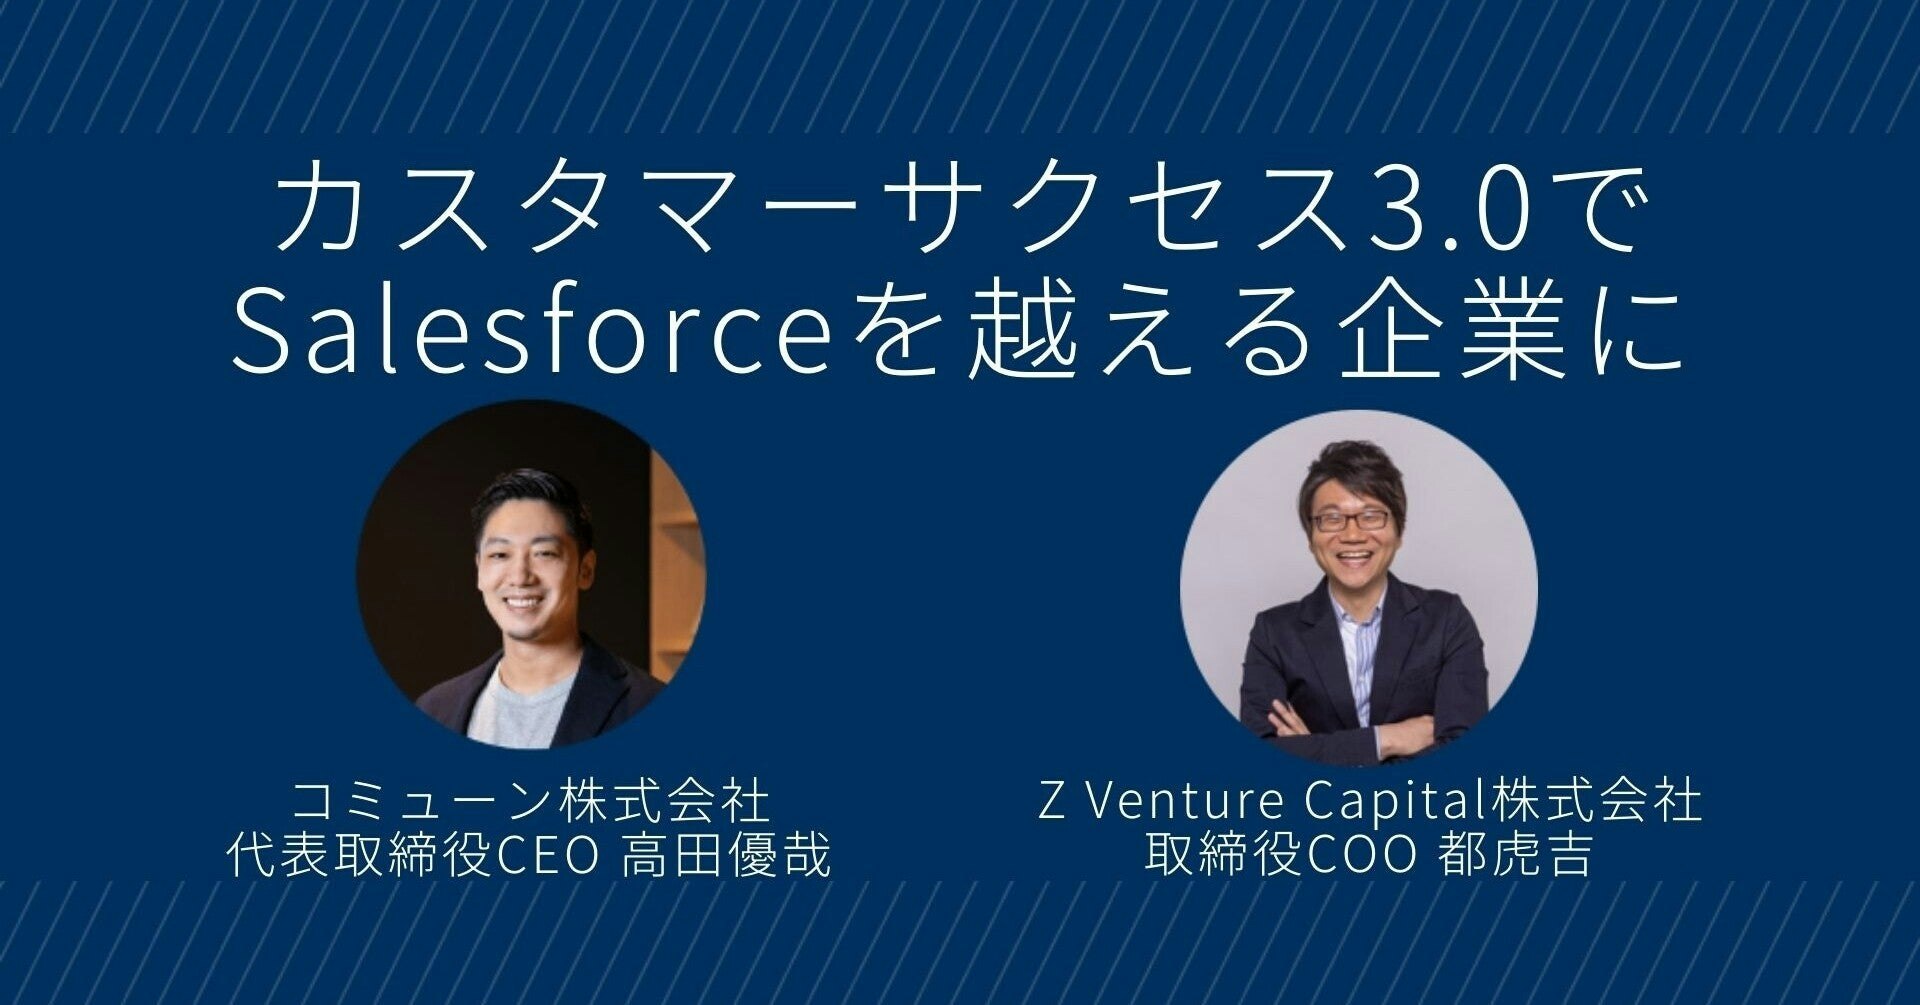 カスタマーサクセス3.0でSalesforceを越える企業に成長する コミューンCEO高田氏インタビュー